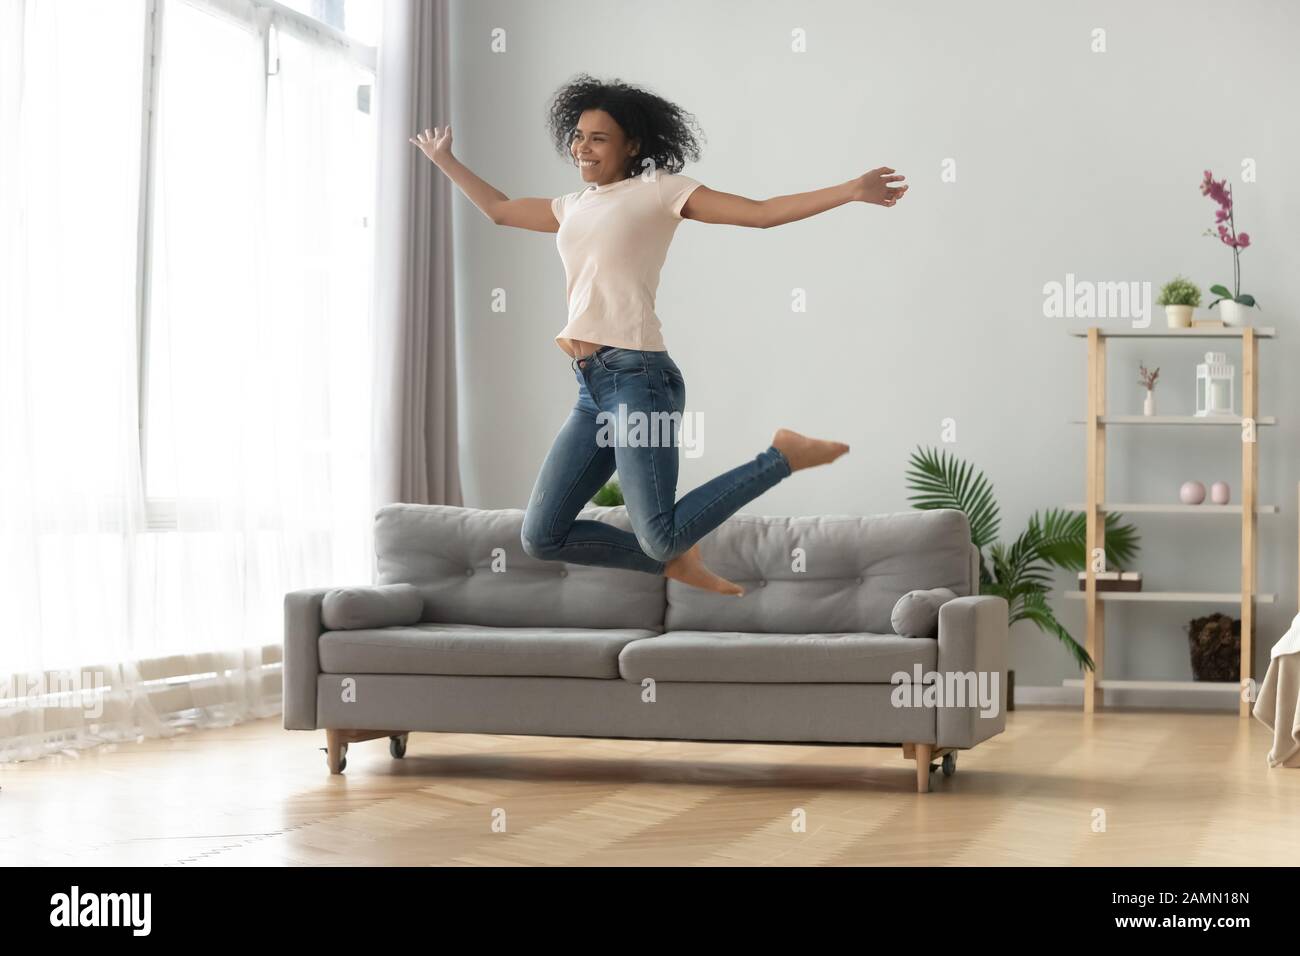 Allegra donna africana in aria in salto nel soggiorno Foto Stock